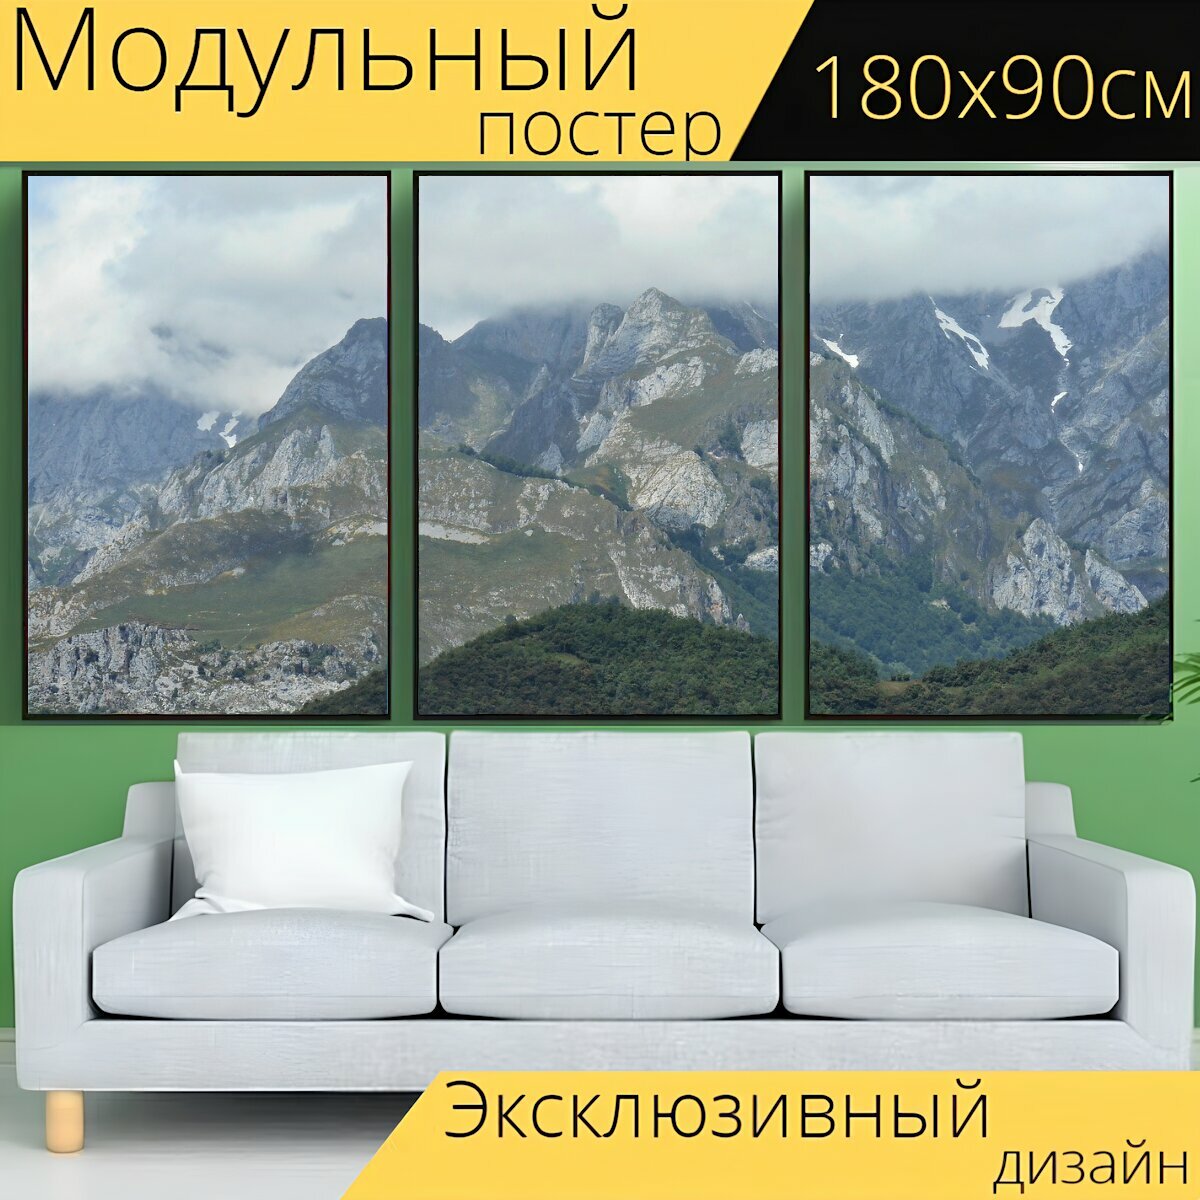 Модульный постер "Гора, горы, пейзаж" 180 x 90 см. для интерьера